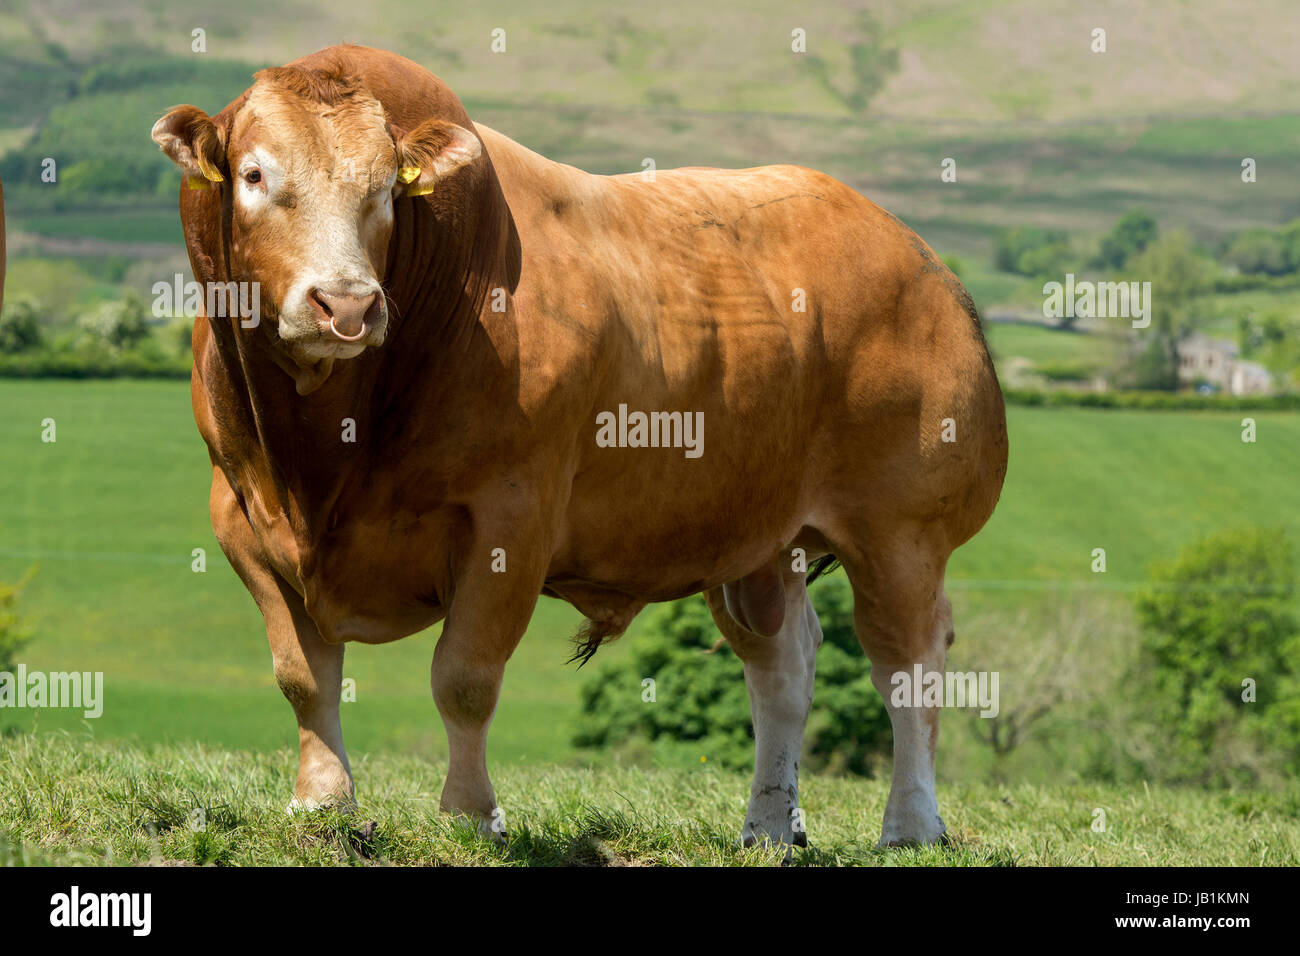 Limousin-Stier auf der Weide mit Rinderherde Stammbaum. Lancashire, UK. Stockfoto